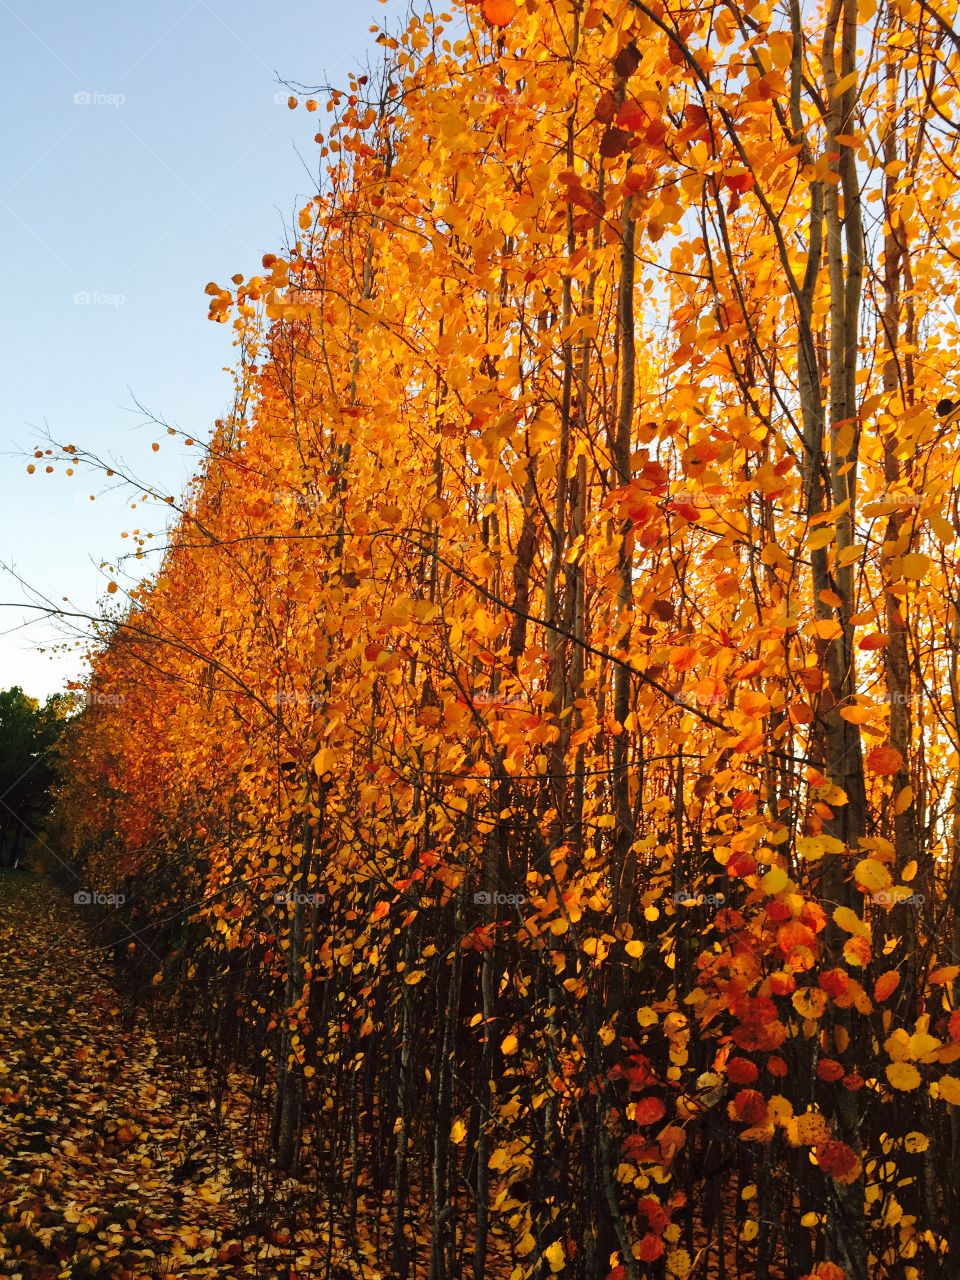 Beautiful fall colors